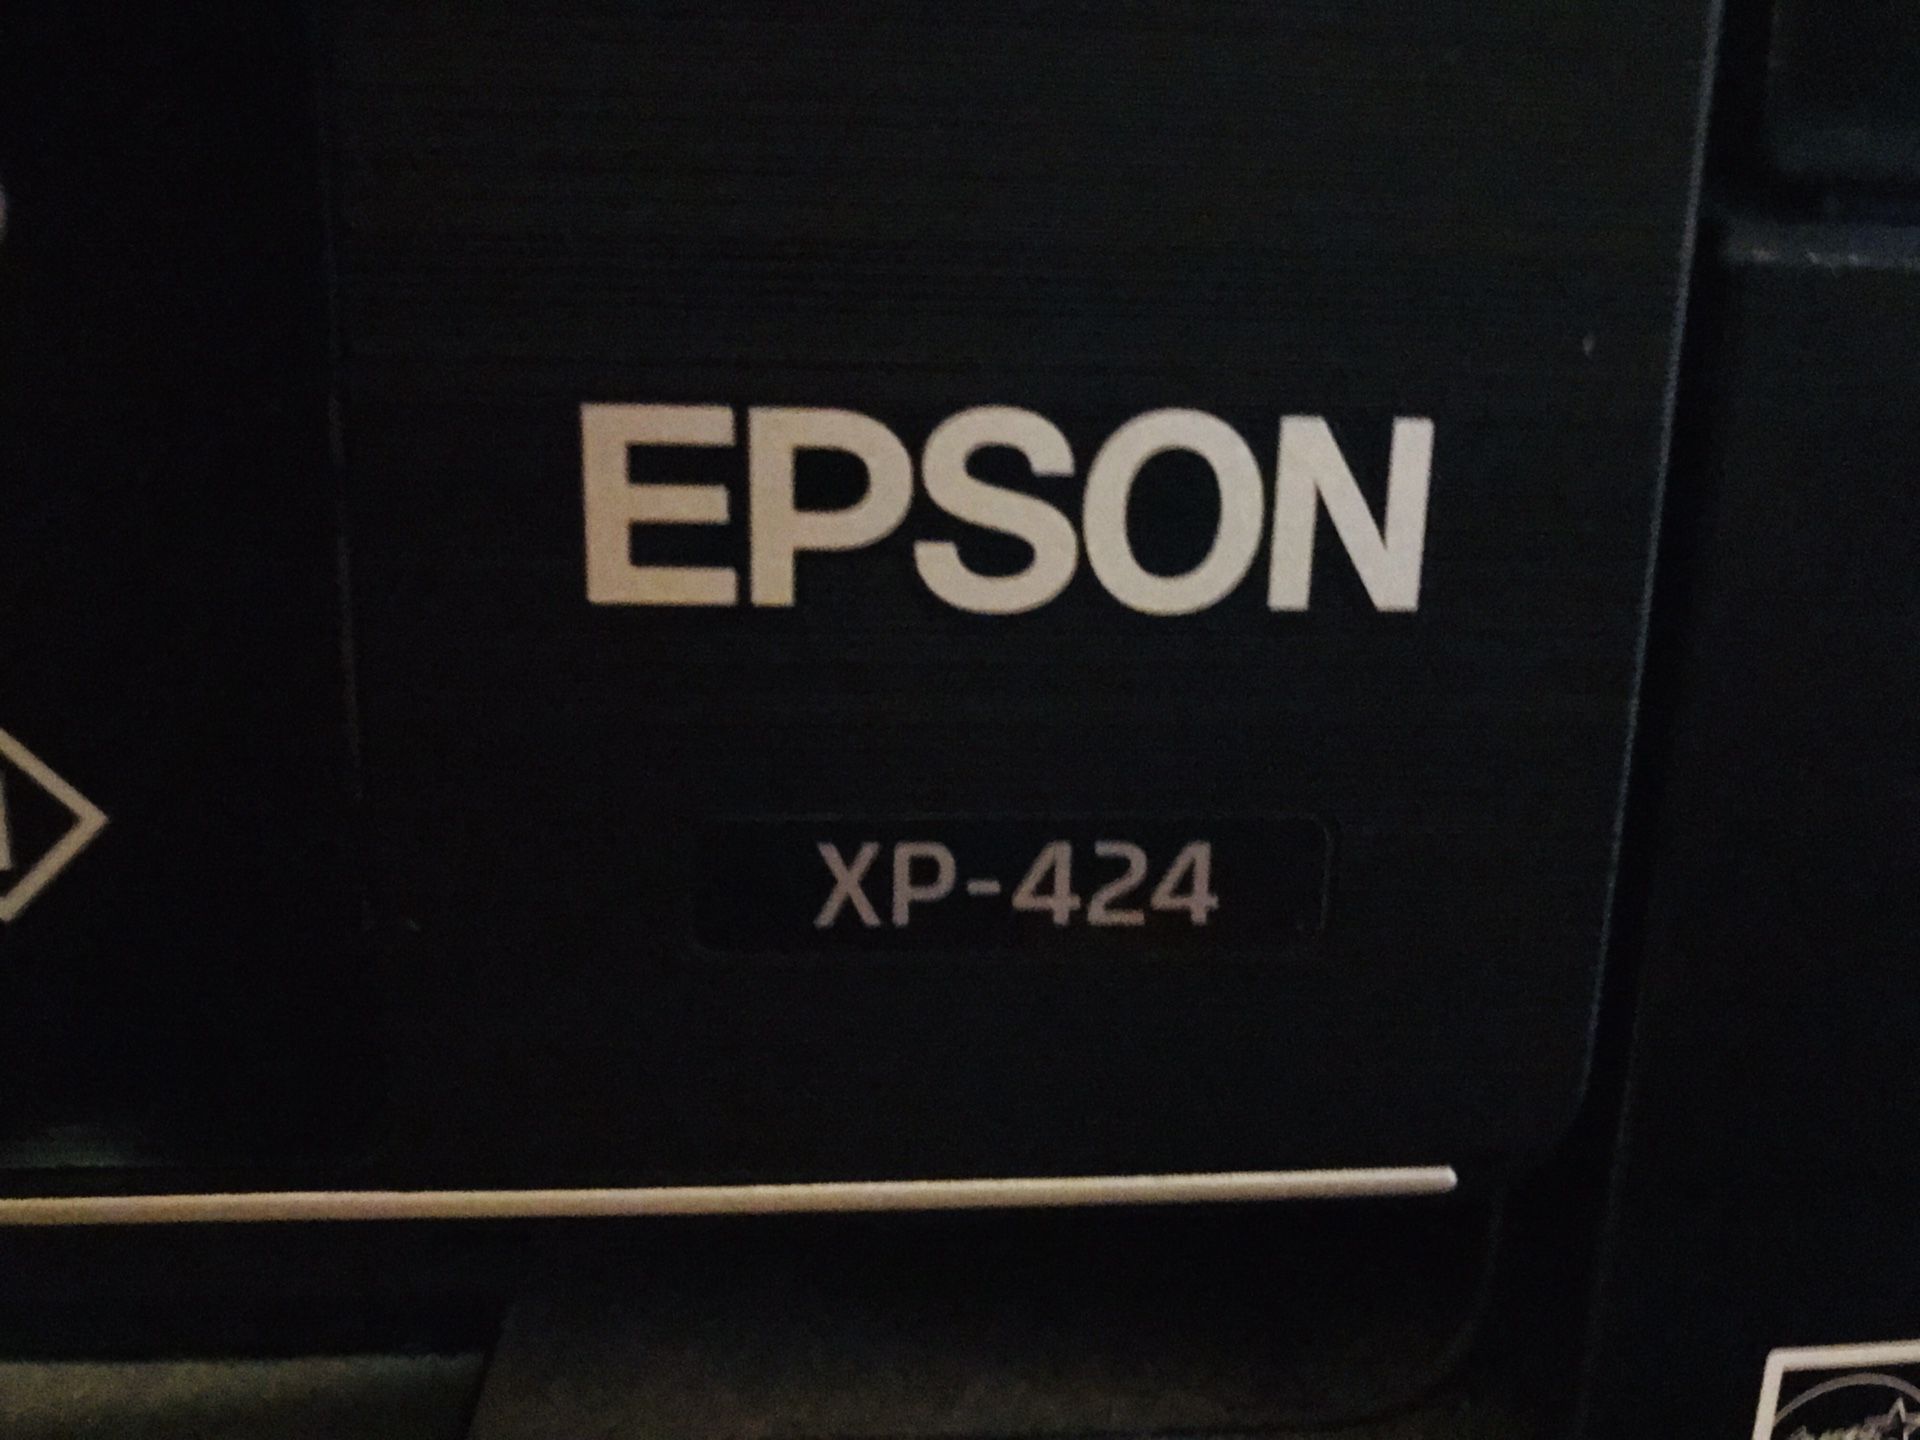 Epson XP-424 printer